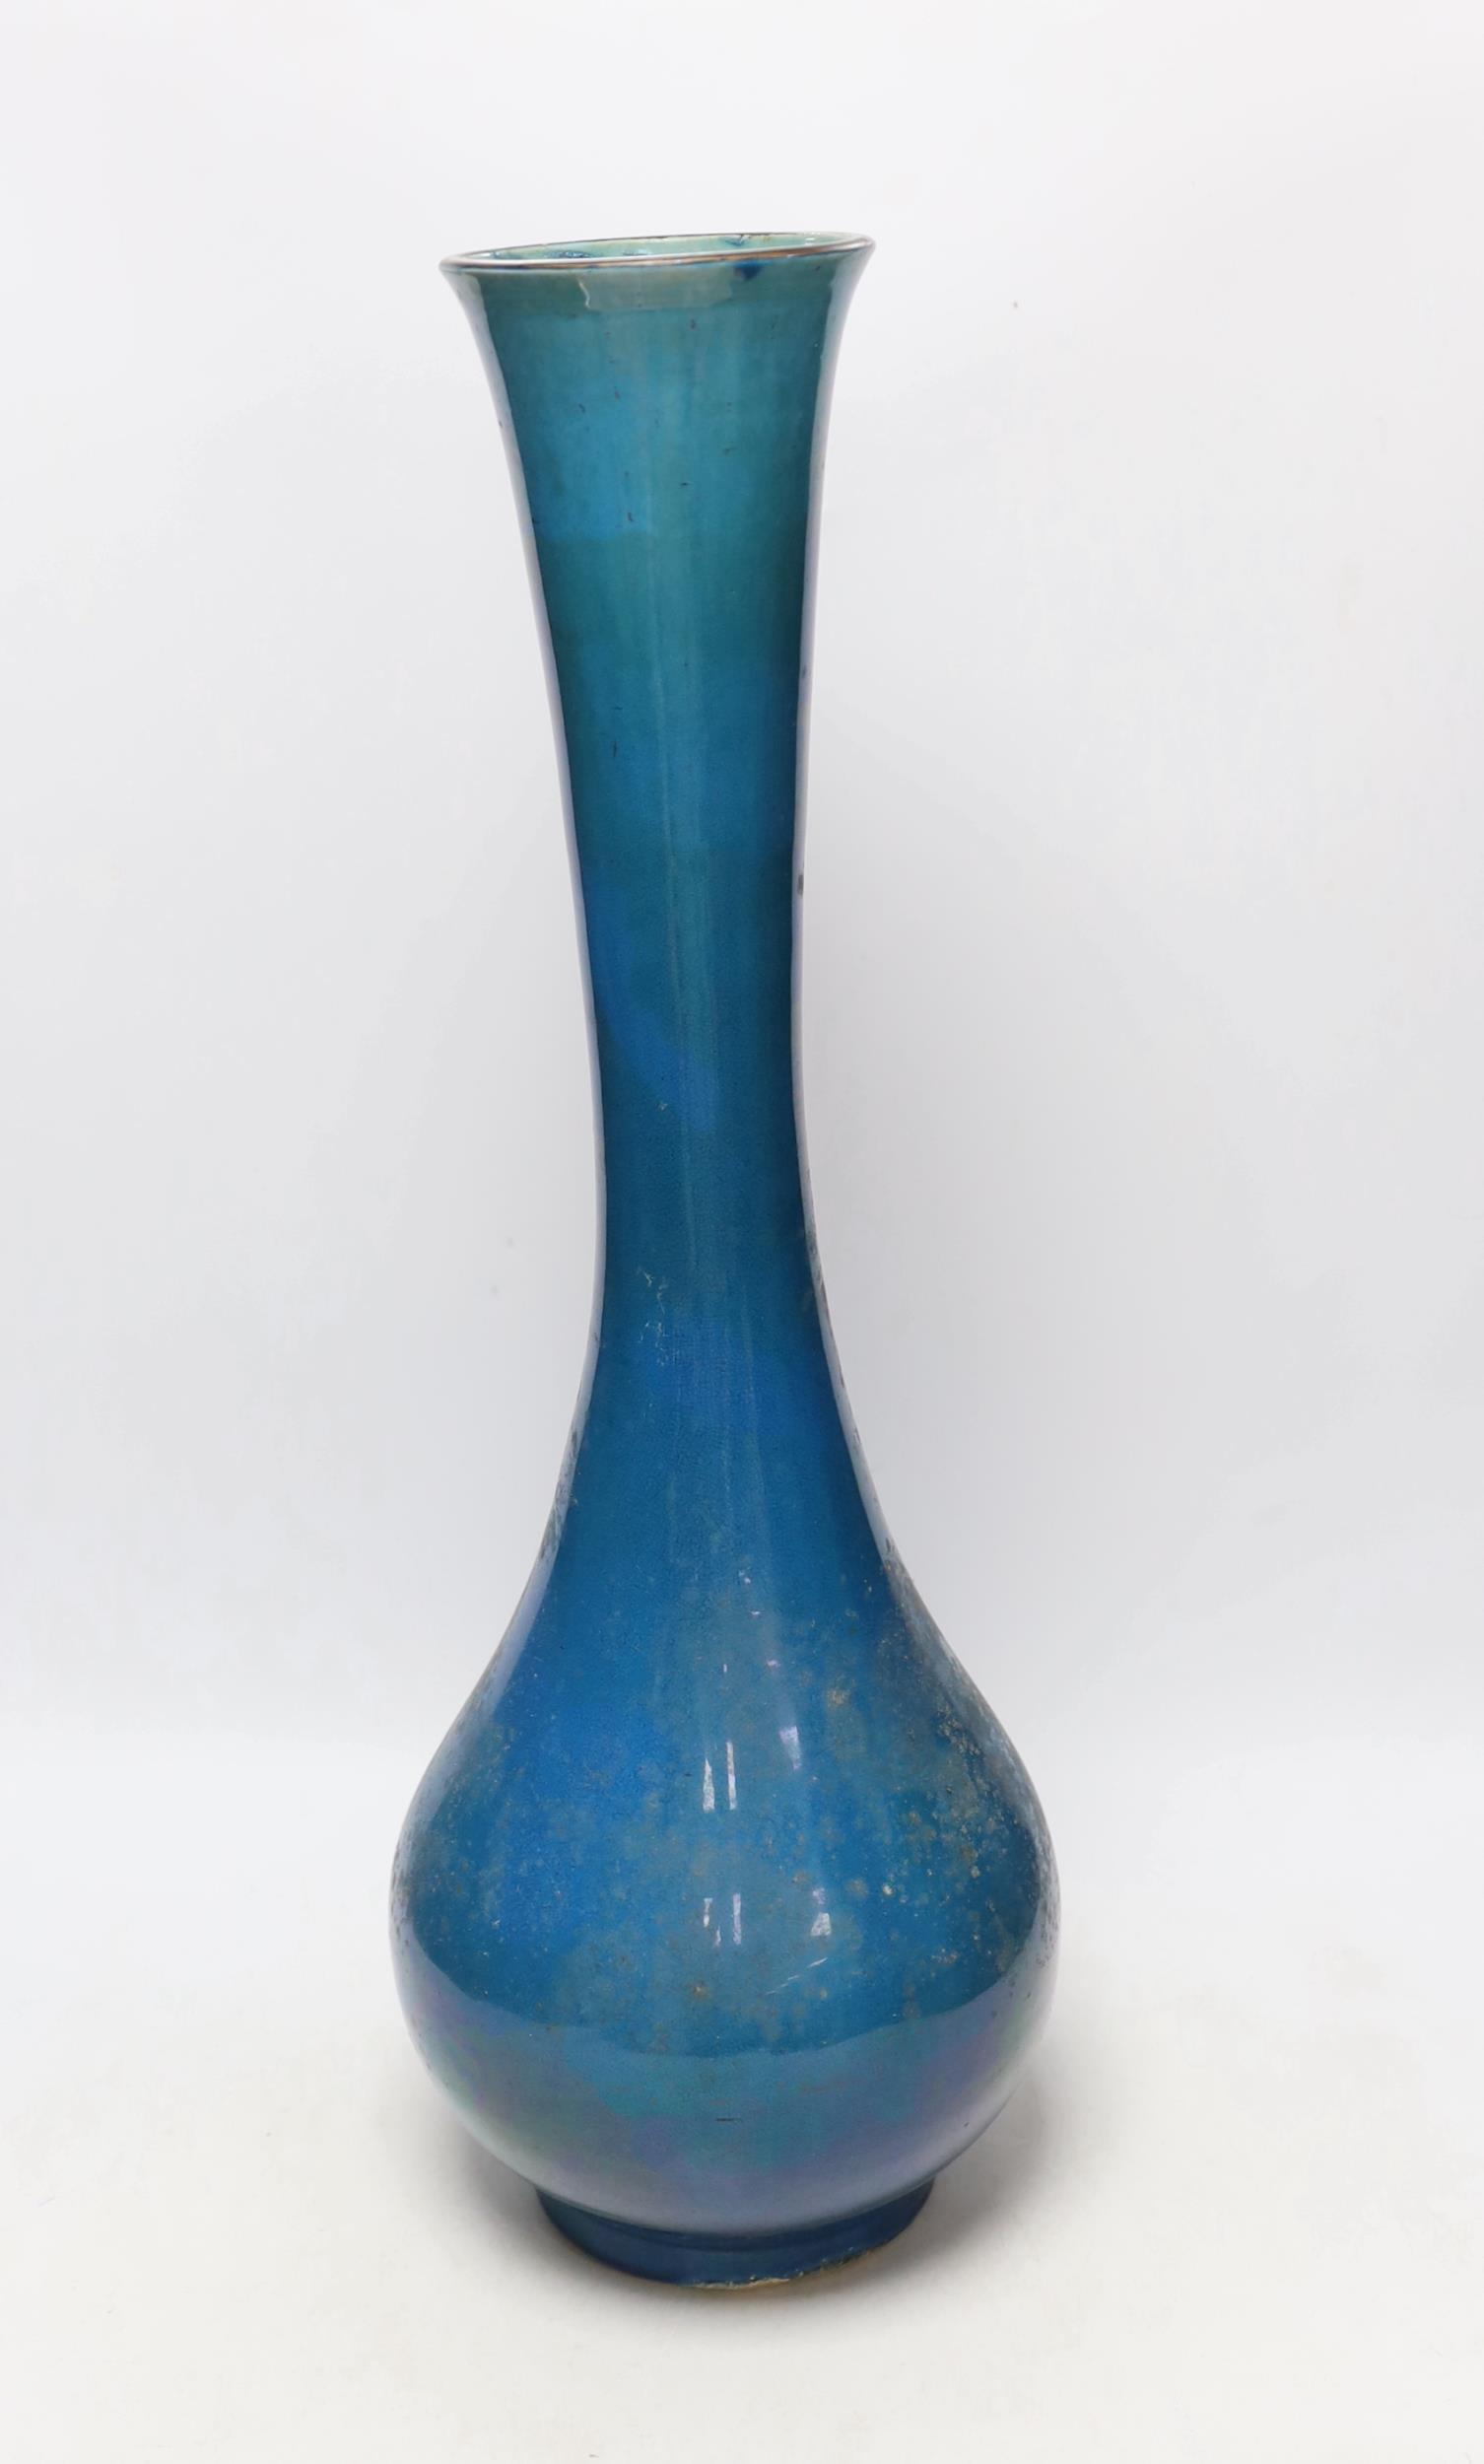 A large Japanese turquoise glazed vase, 59cm high - Image 2 of 4